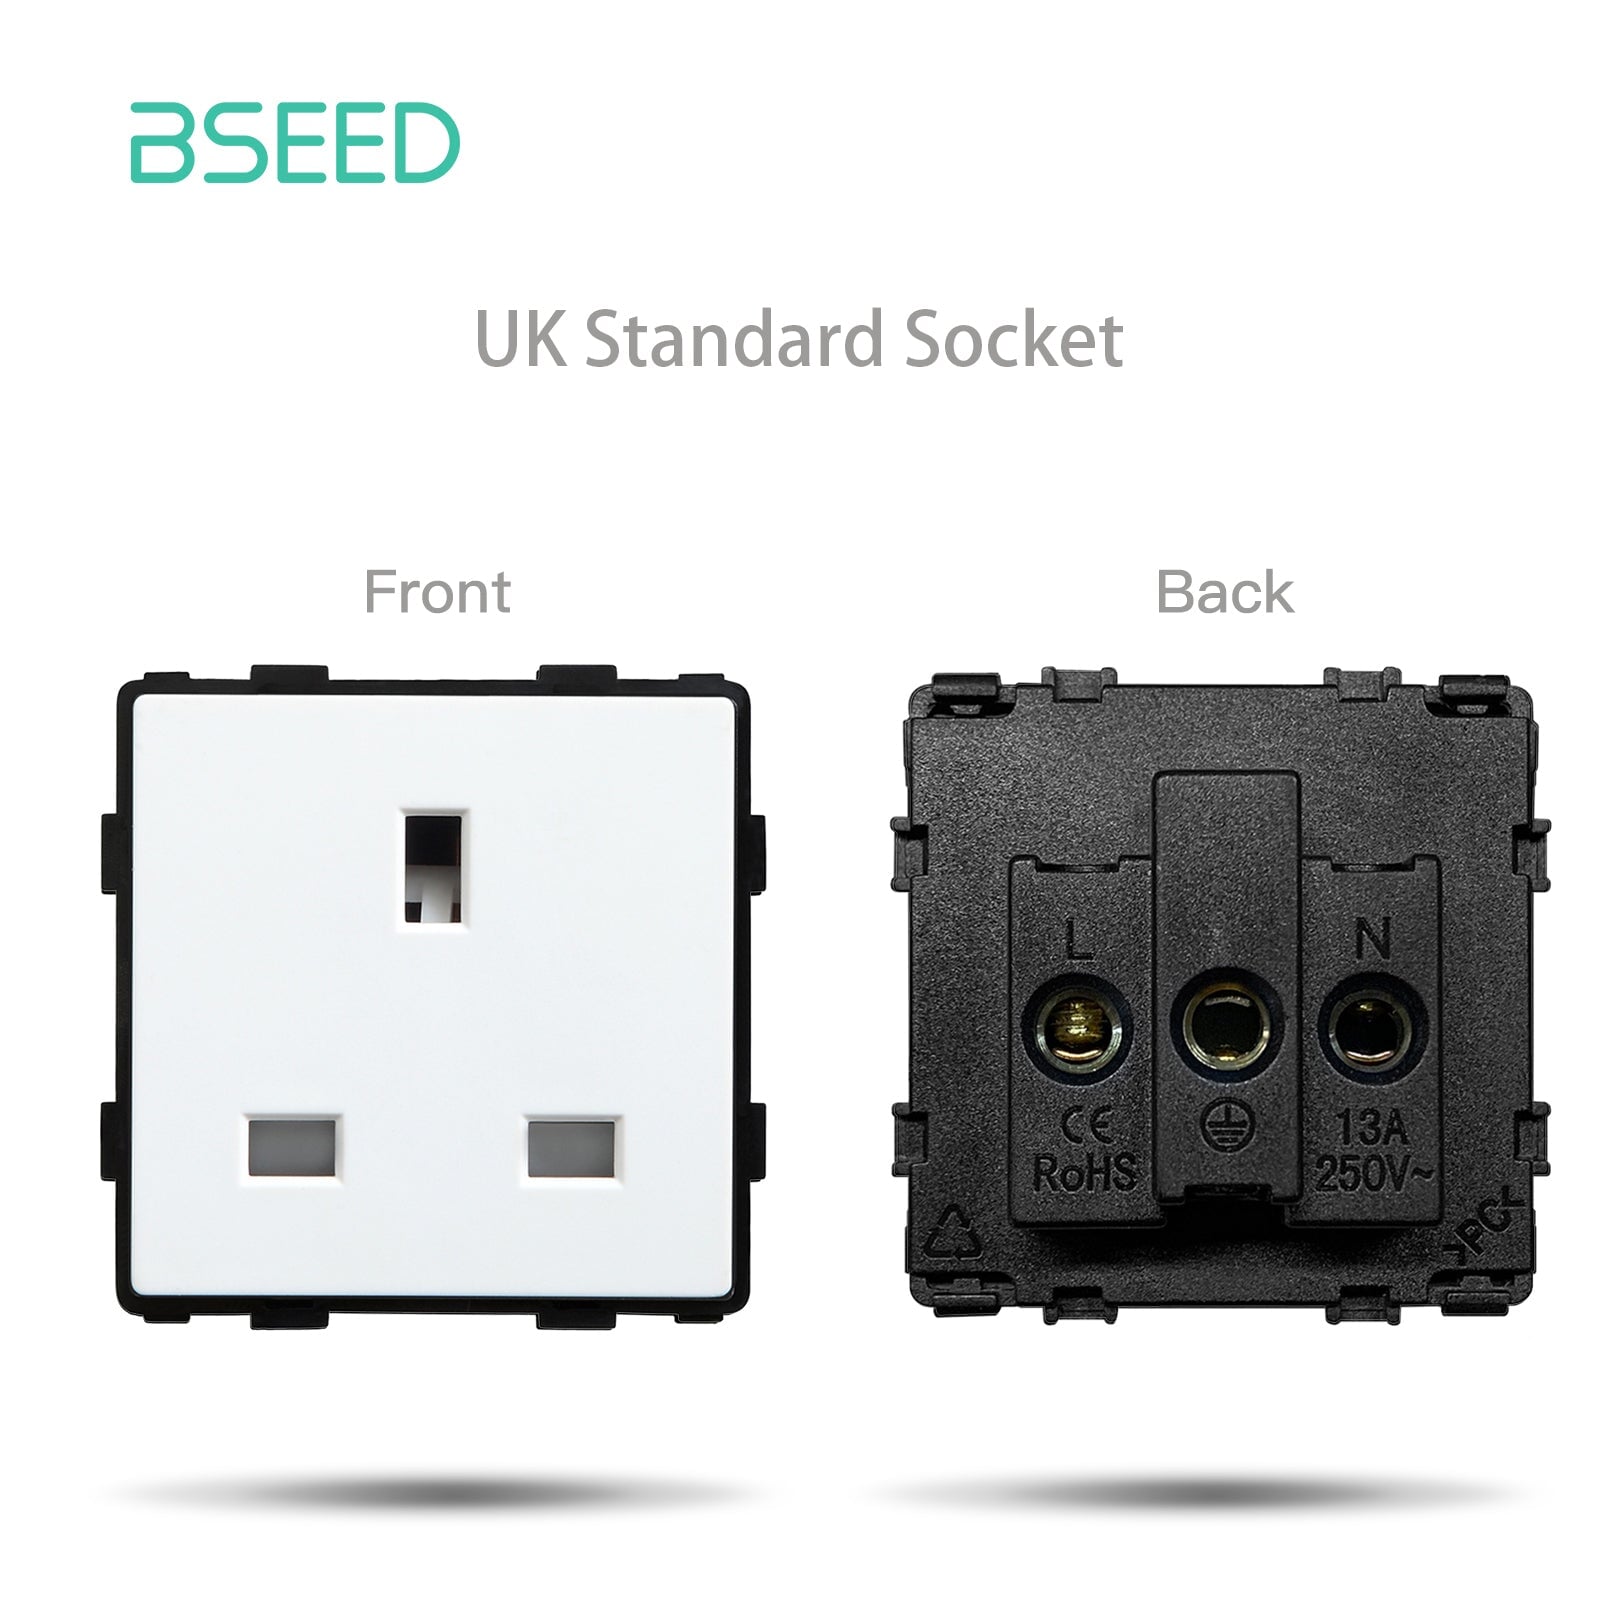 BSEED EU/FR/ UK/MF Standard Wall Socket Function Key Touch WiFi Zigbee type Power Outlets & Sockets Bseedswitch White UK Touch